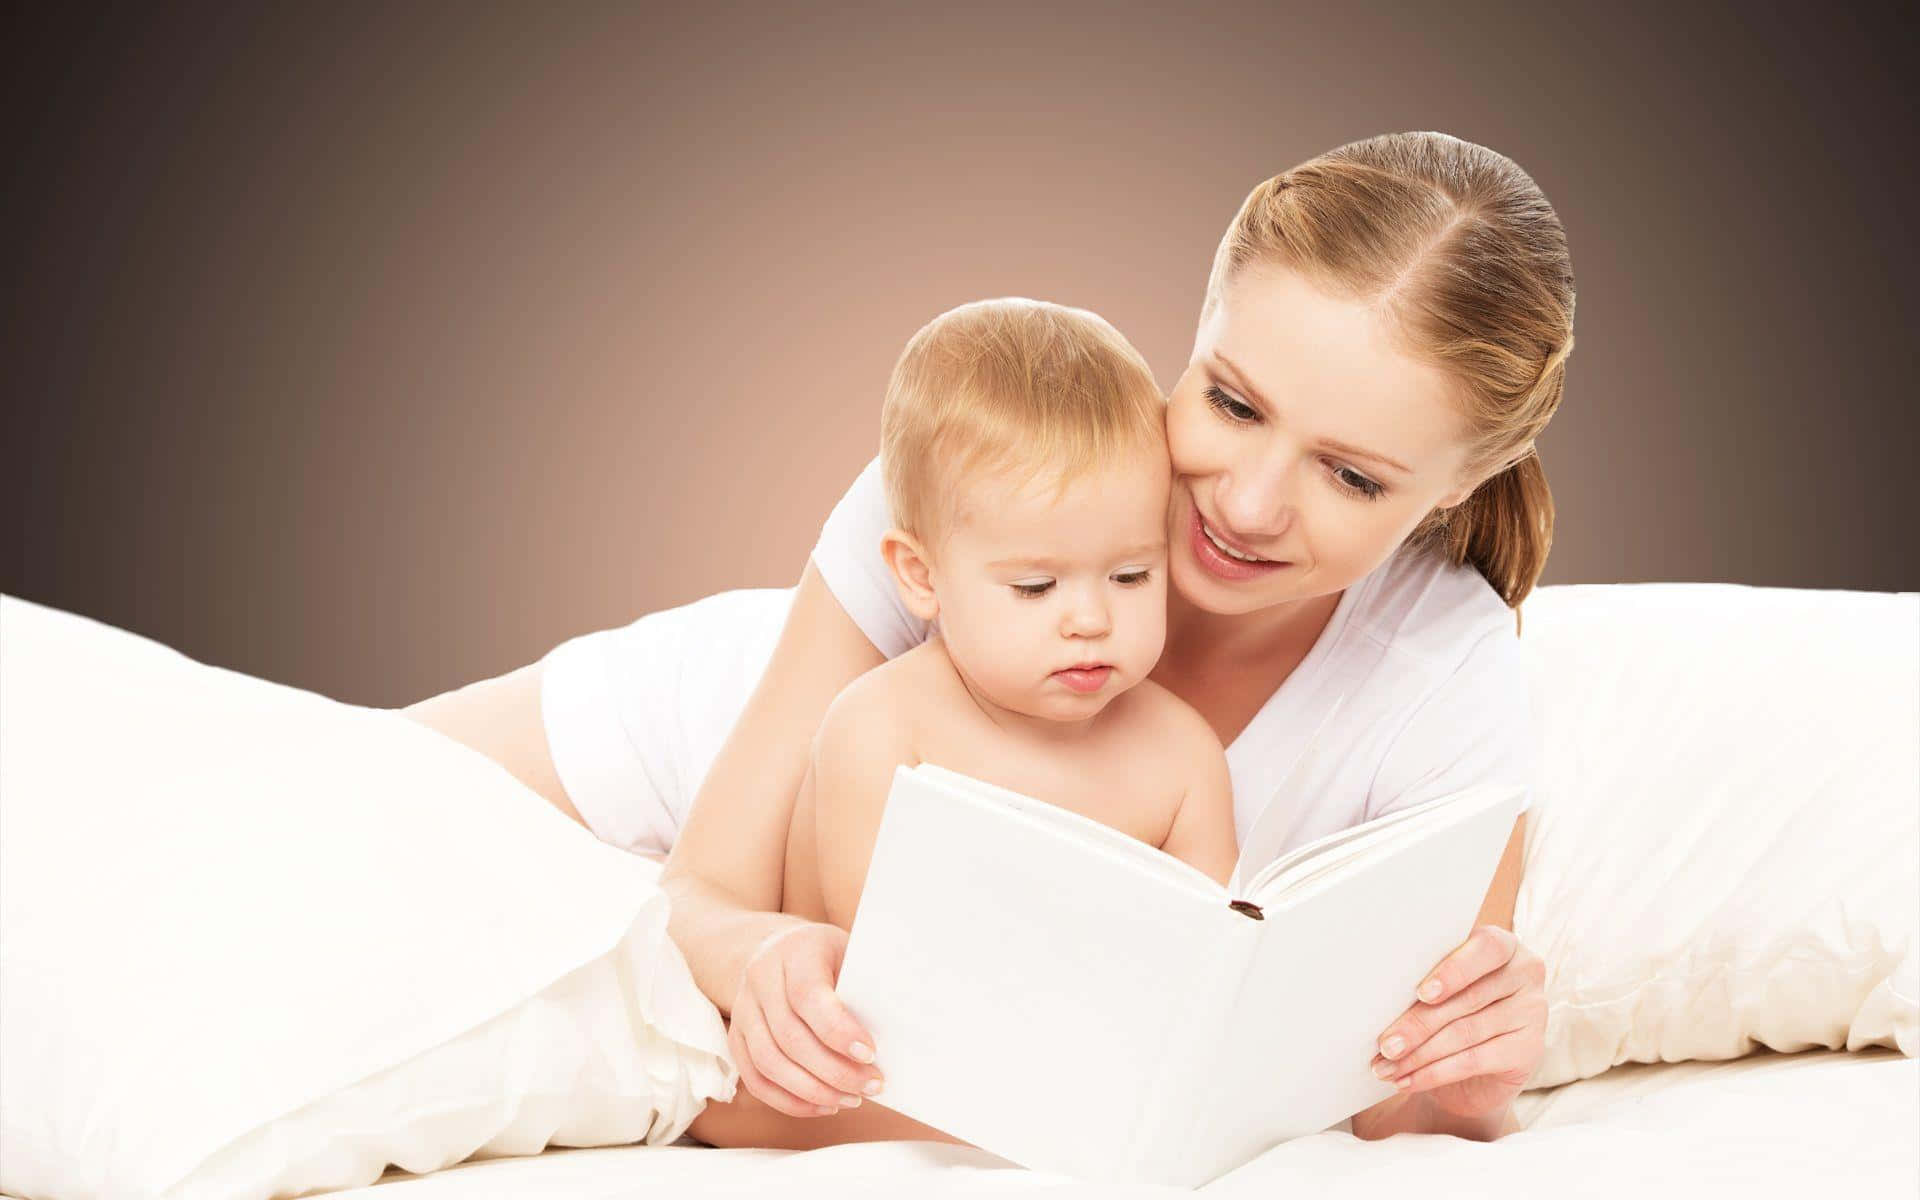 Imagende Una Madre Leyendo Un Libro A Un Bebé.